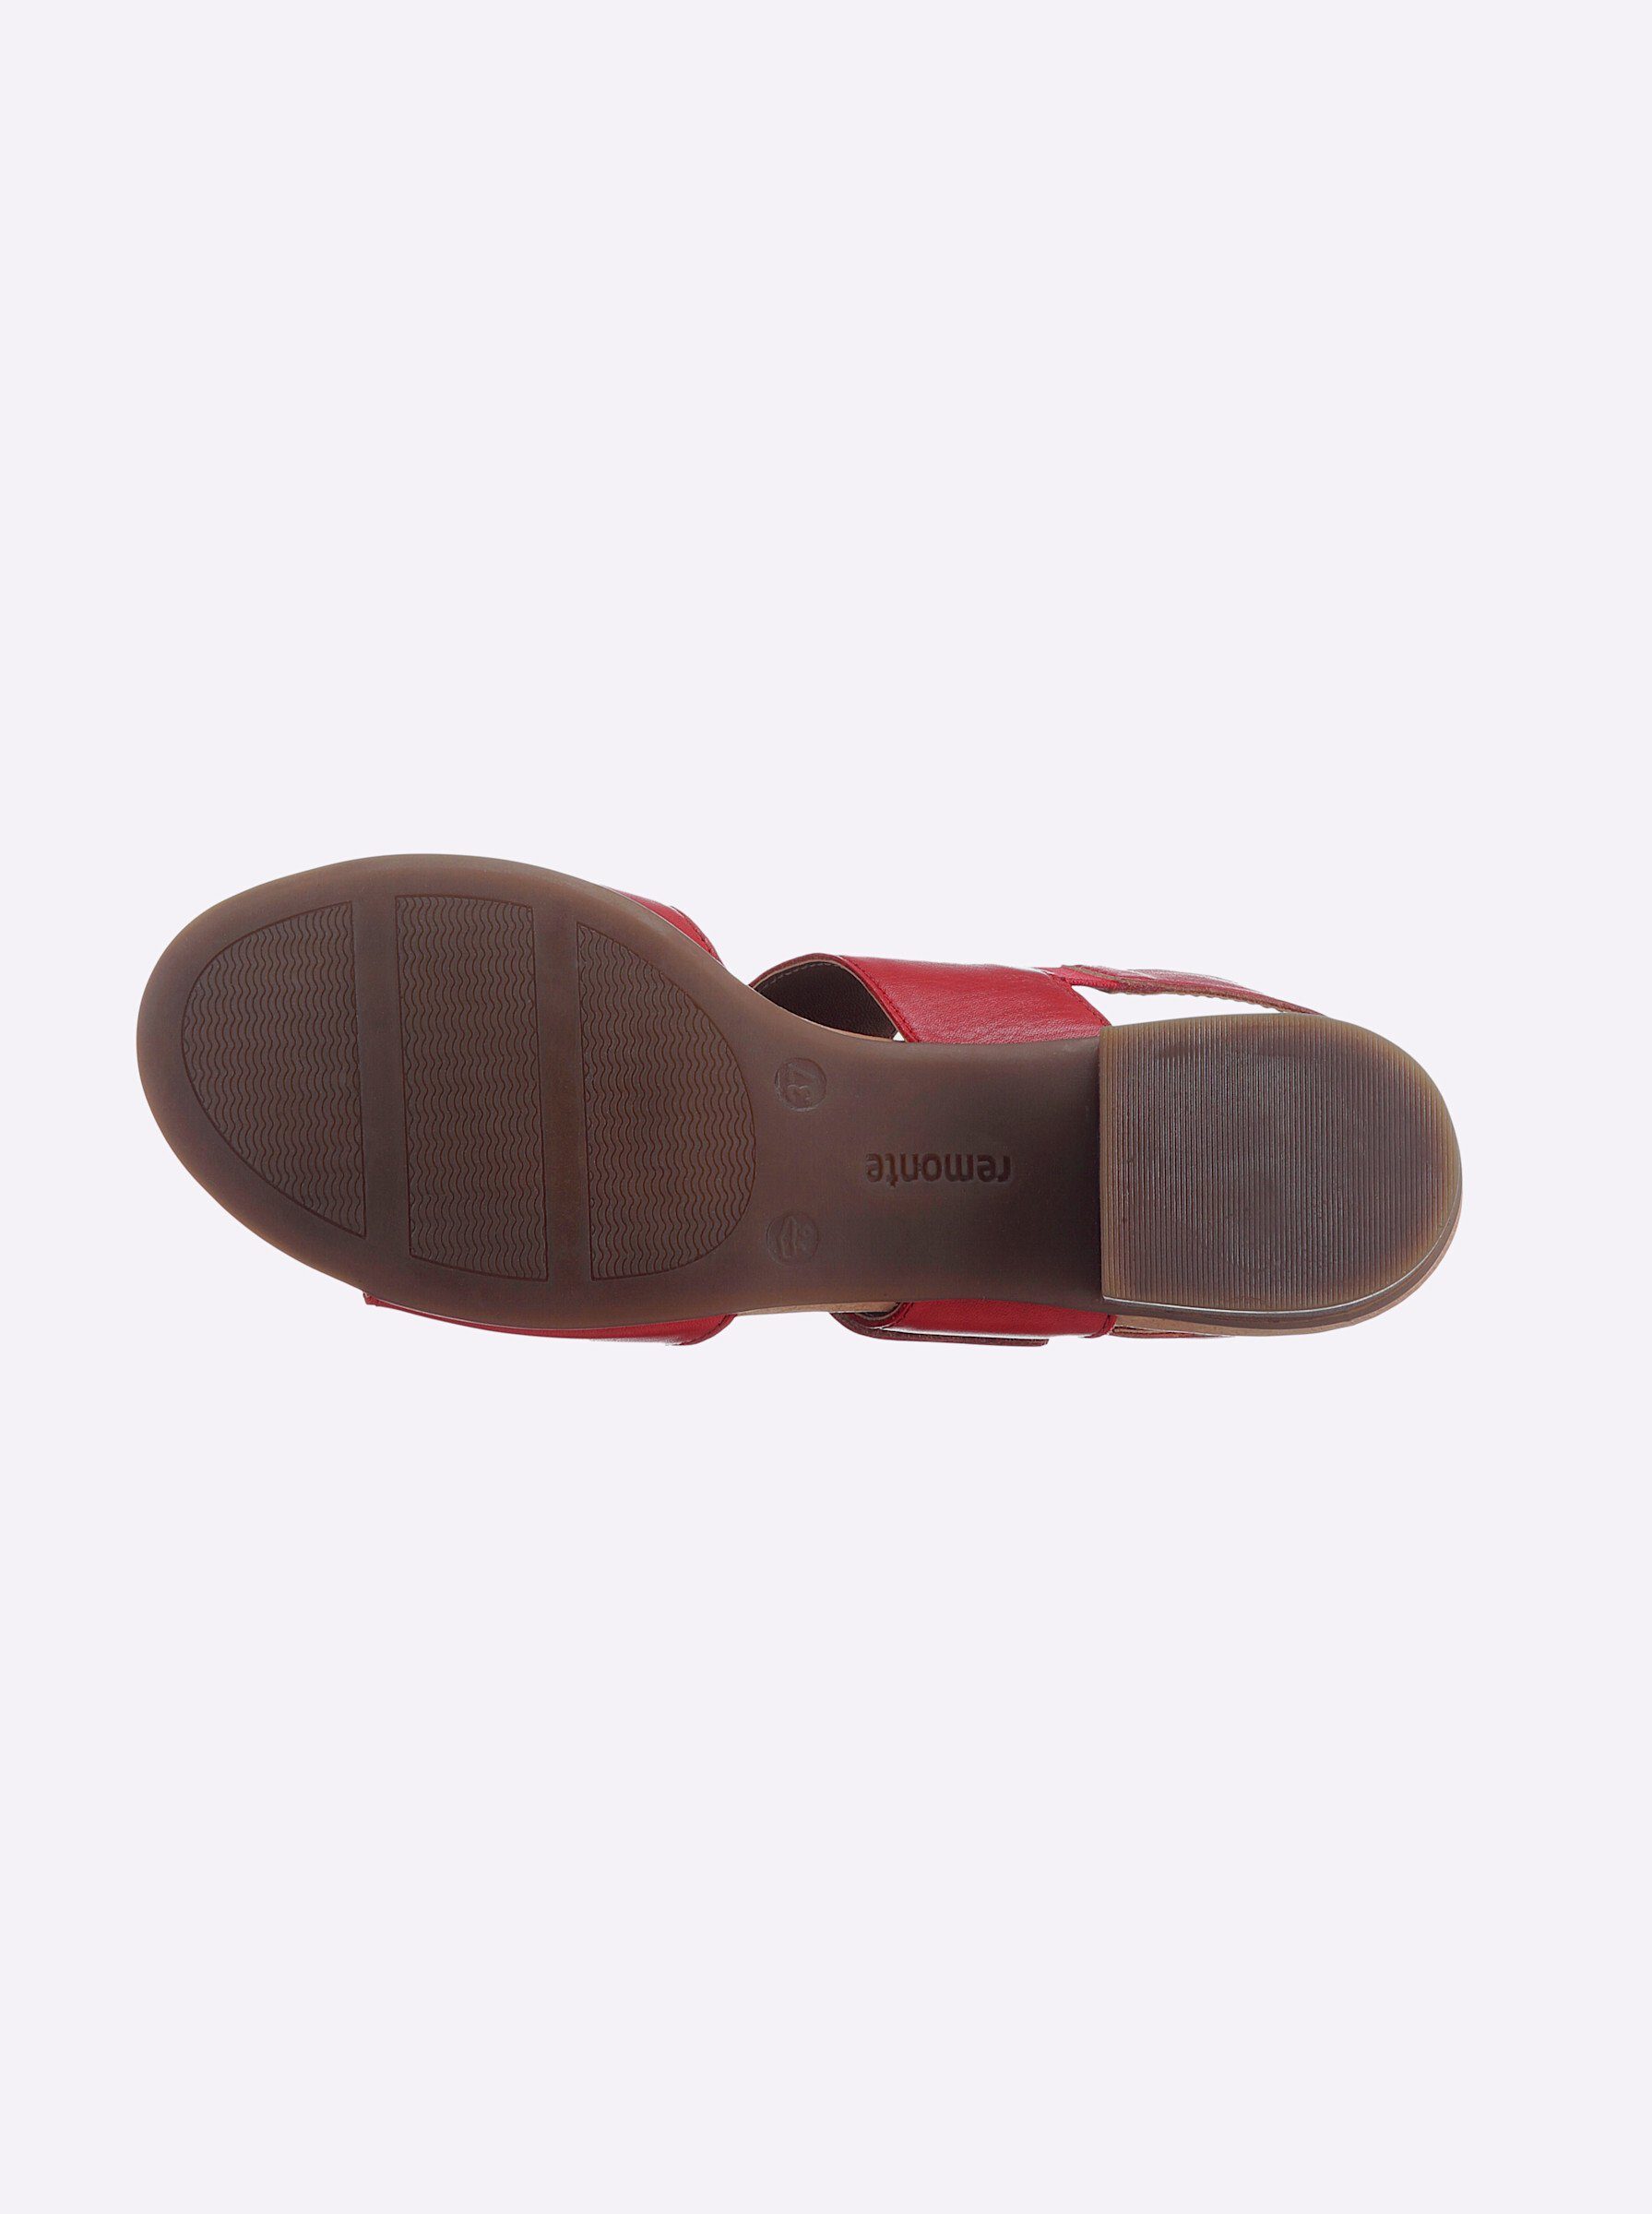 Sandalette rot (33) Remonte